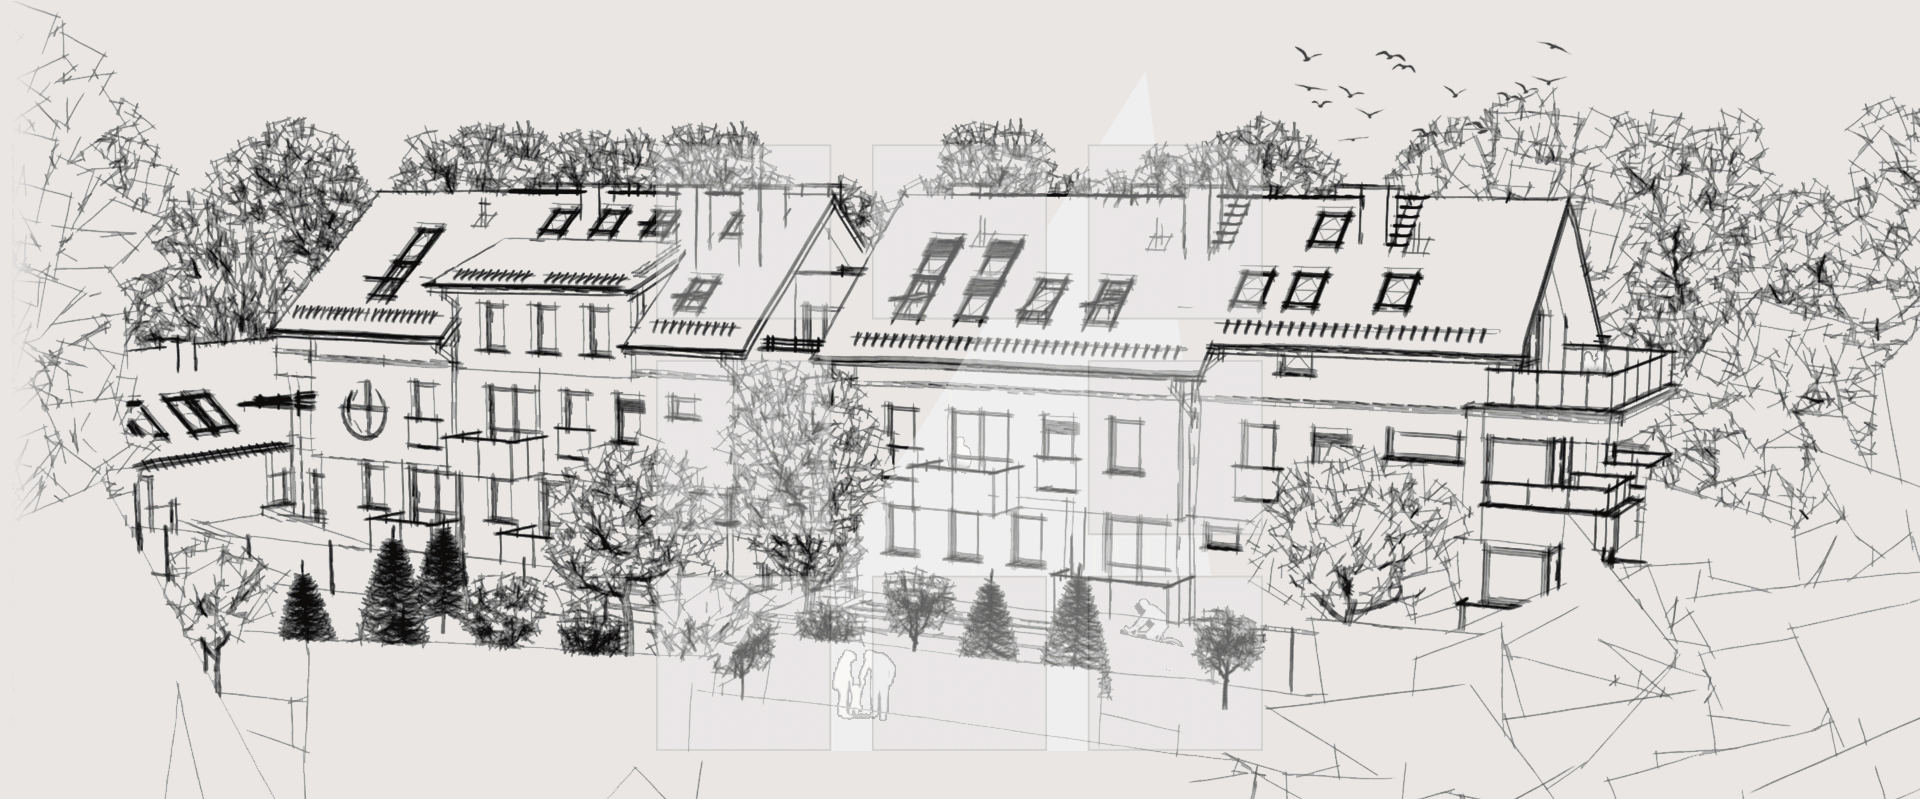 Visualisierung des neuen Projekts des Designbüros - Furmanek Aleksander - ein Mehrfamilienhaus im Stadtteil Podgórz in Toruńń